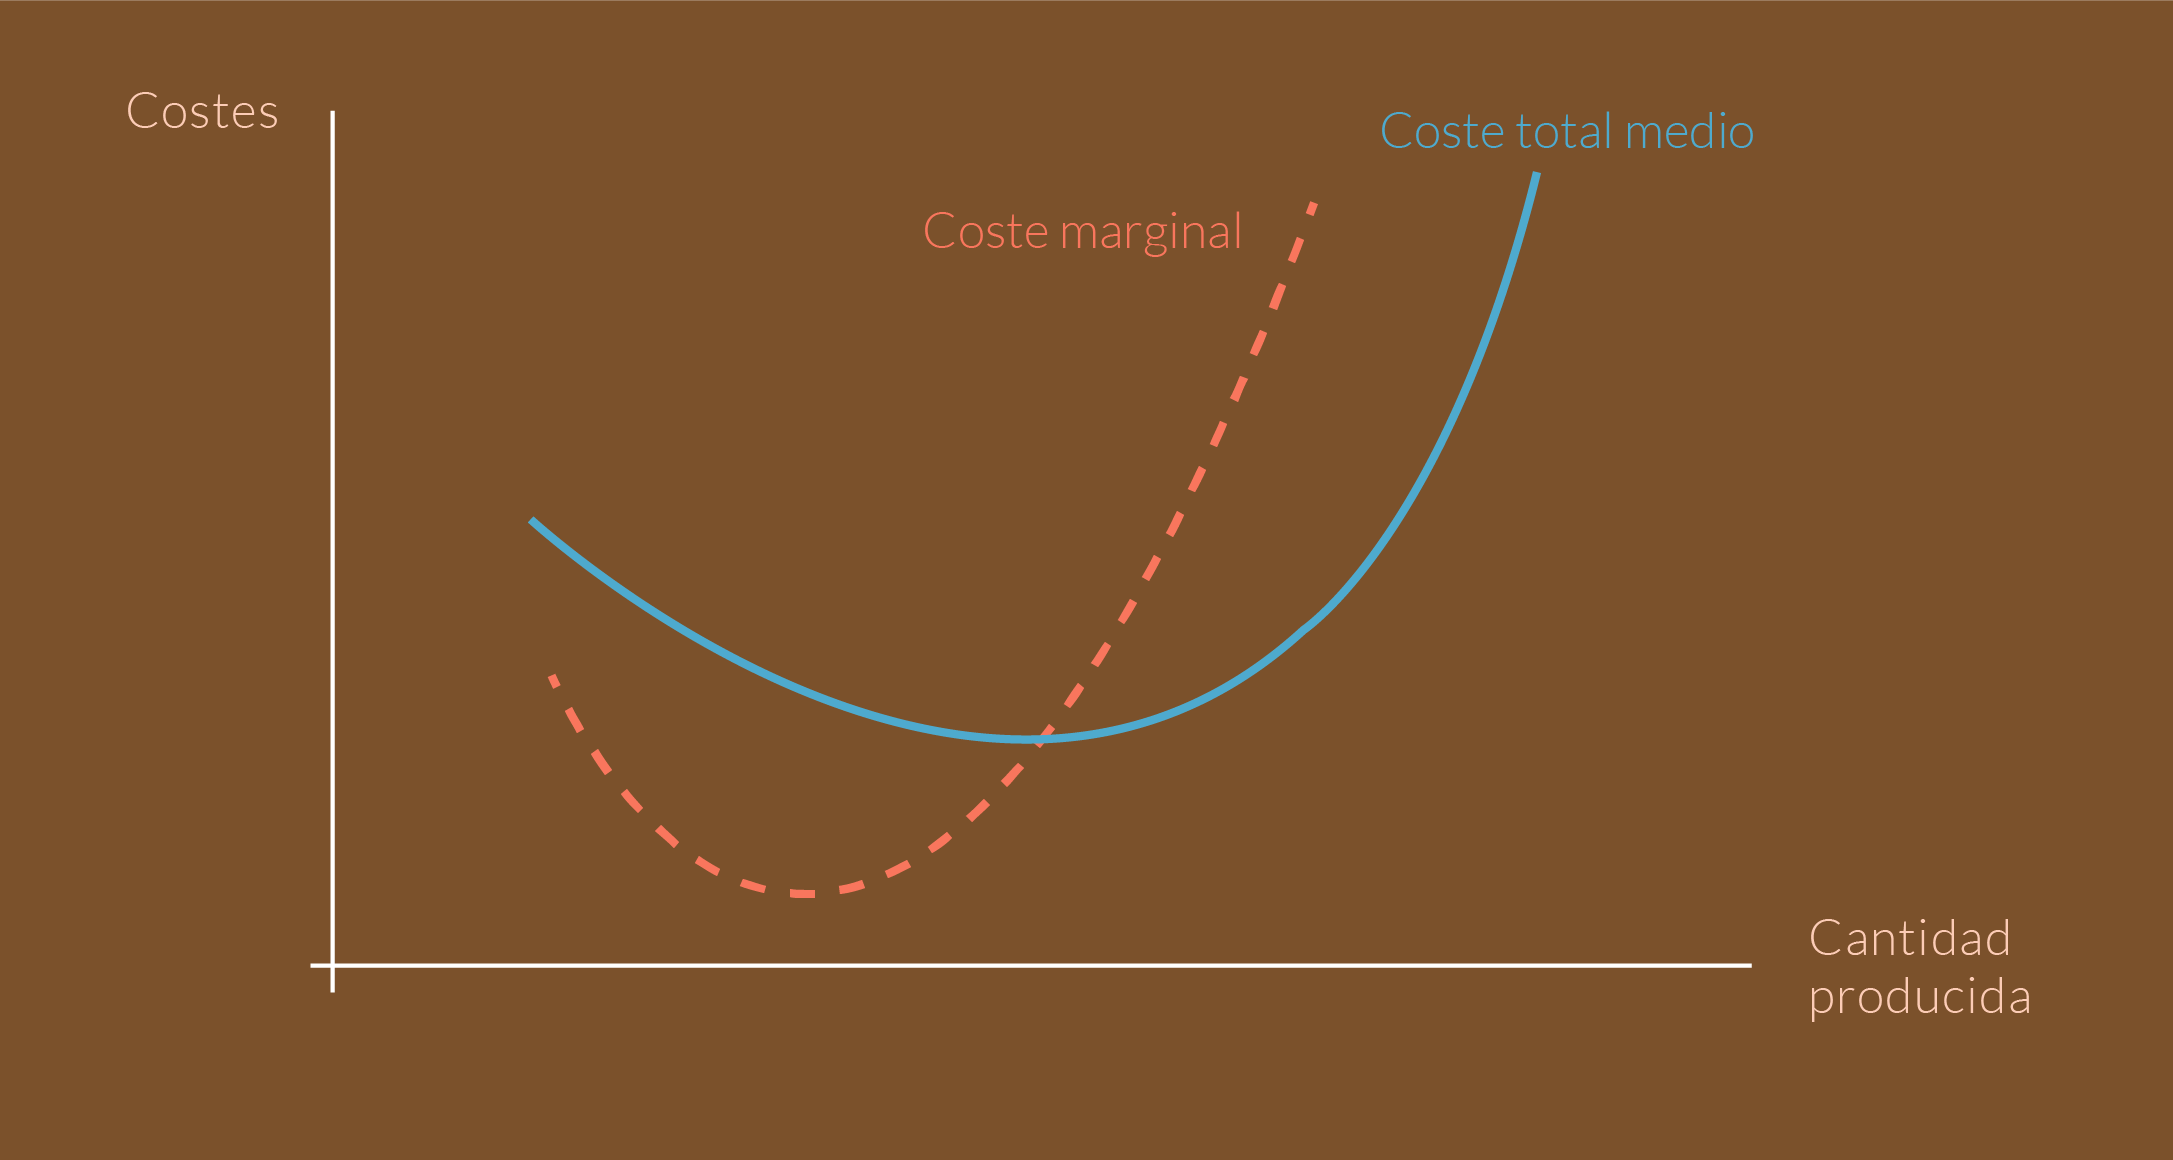 Gráfica que relaciona el costo marginal con el costo total medio.